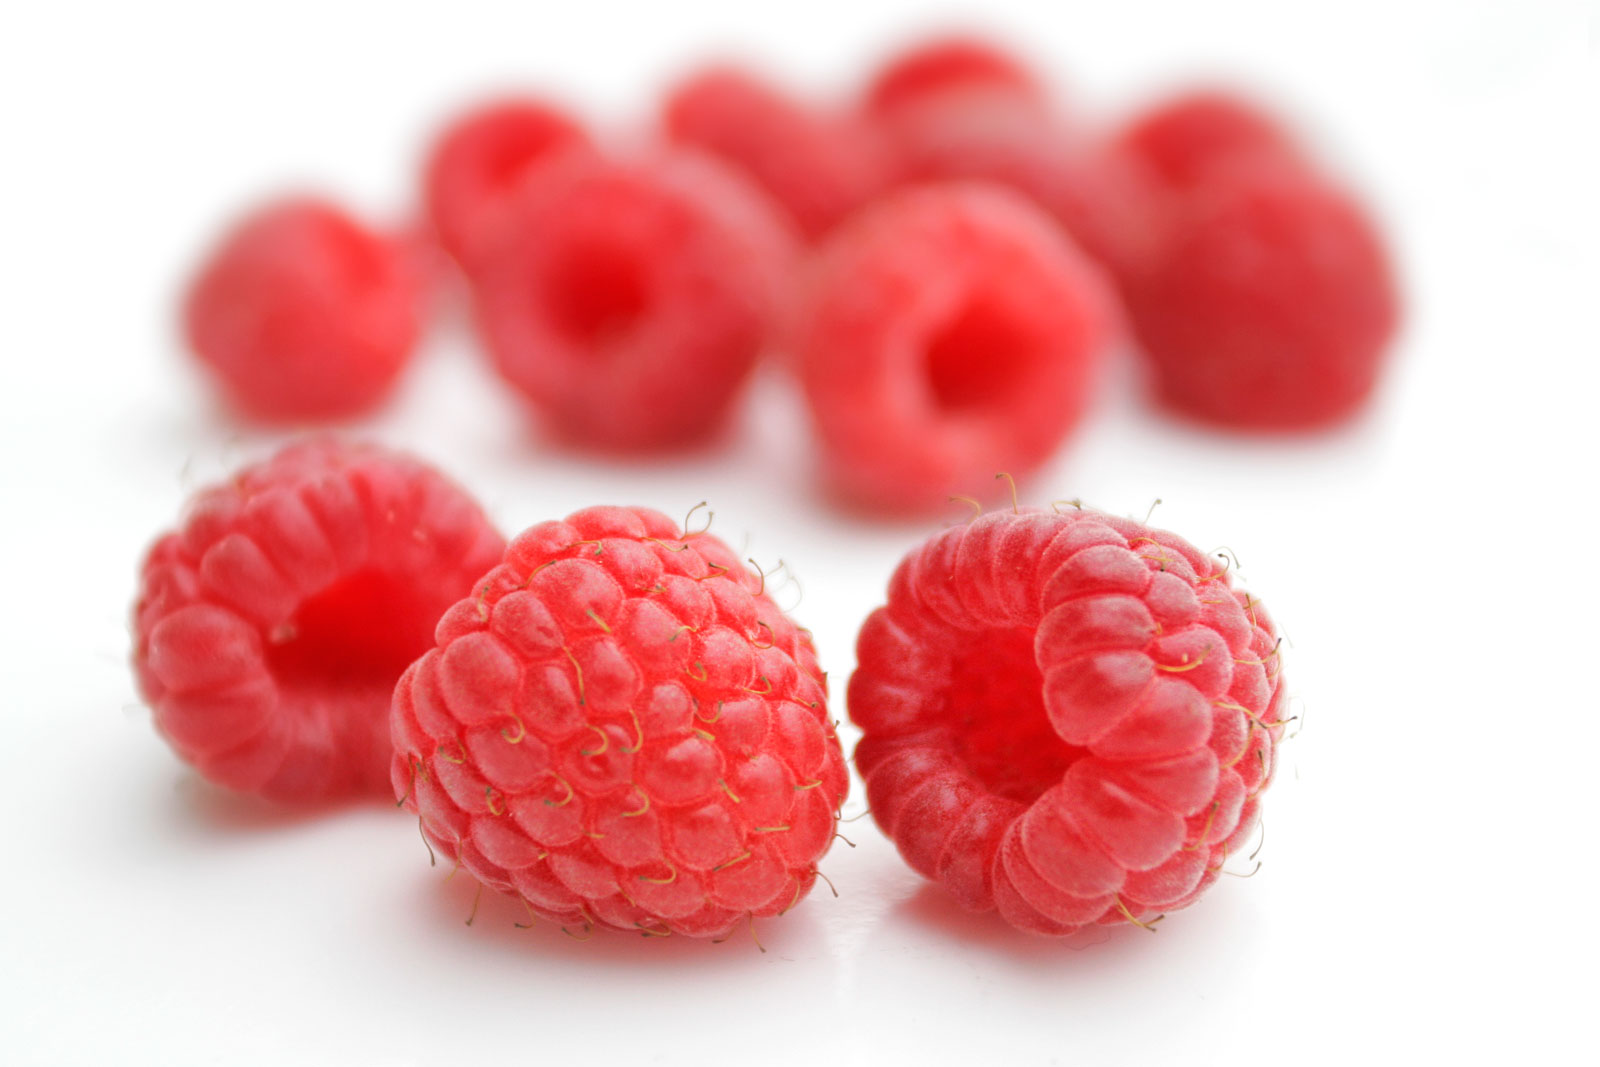 File:Raspberries02.jpg - Wikipedia